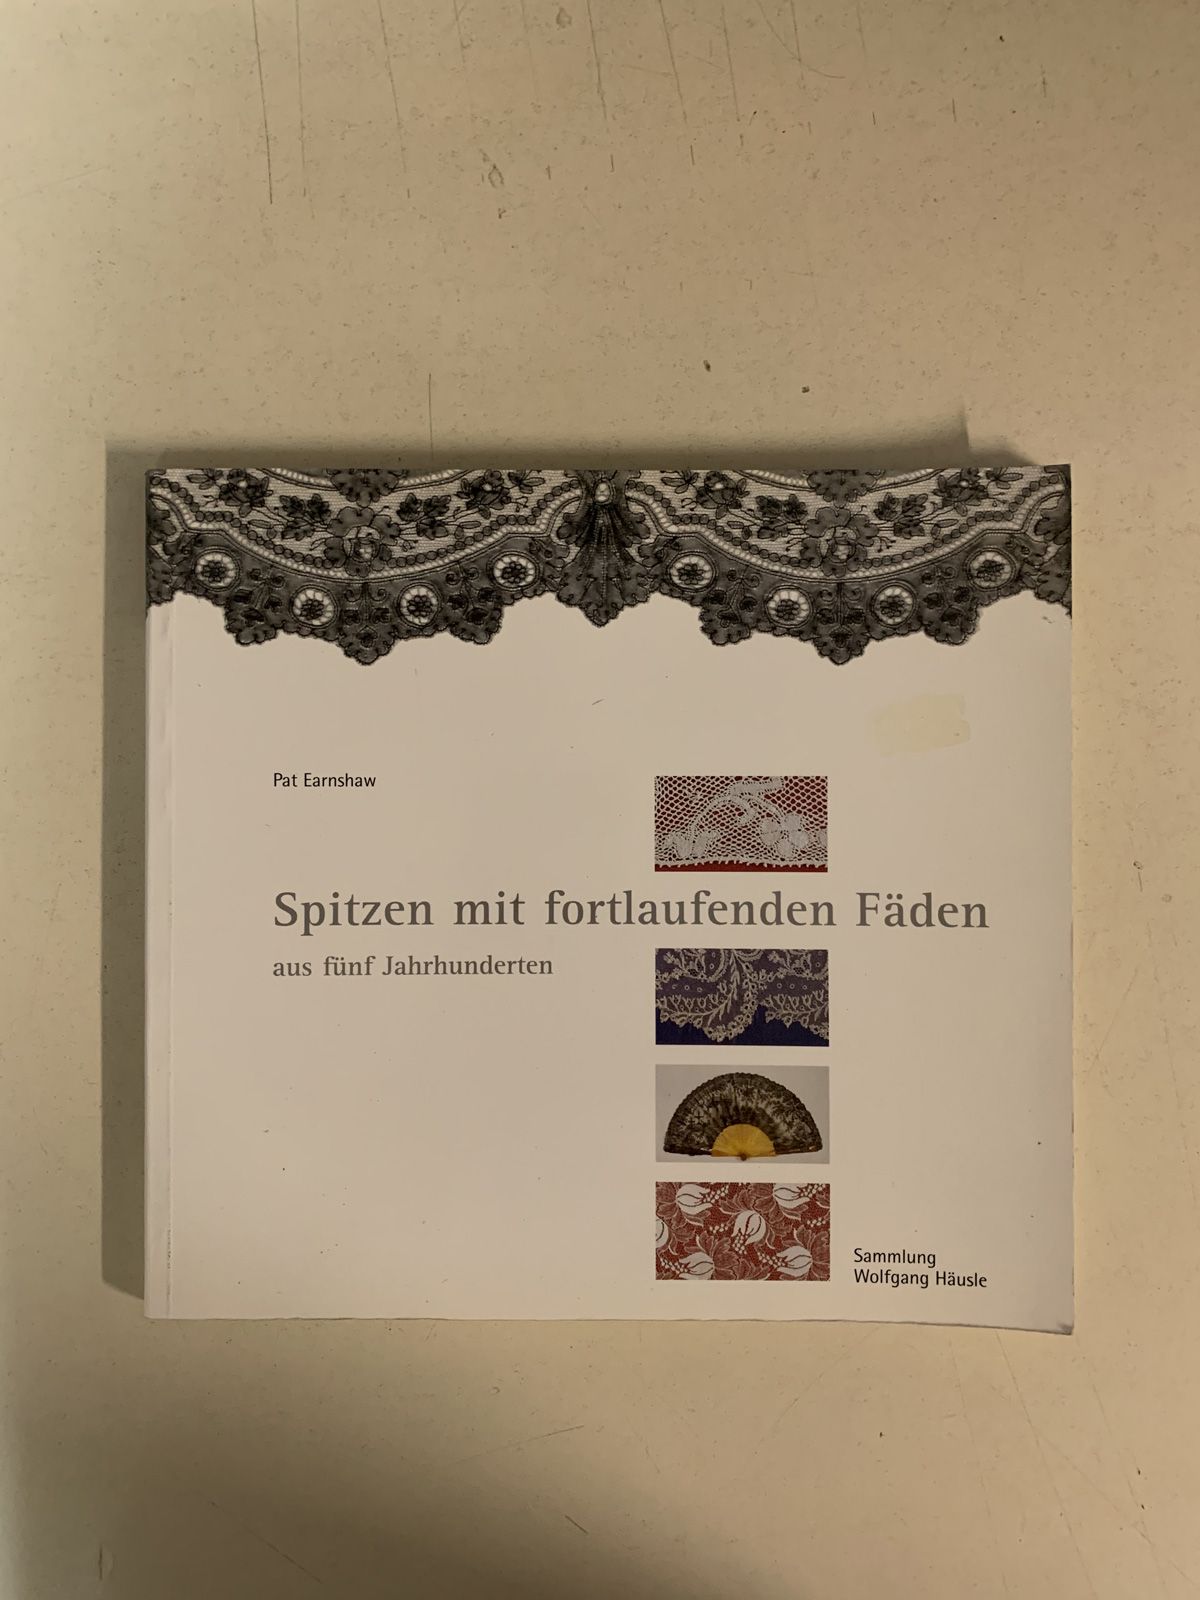 Null Dreizehn deutschsprachige Bücher über Klöppeltechniken.
Drei Bücher über Kl&hellip;